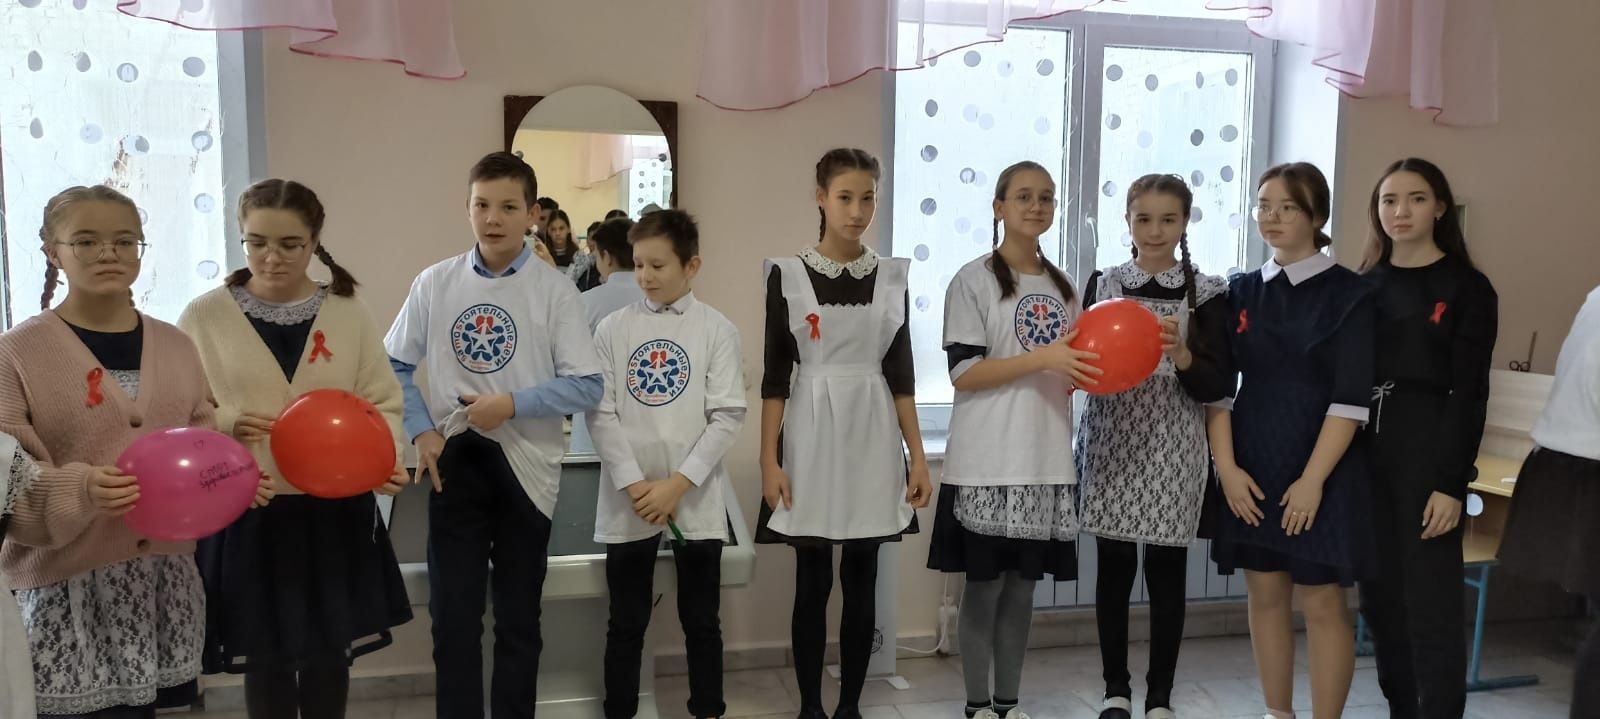 В Байрякинской школе прошло мероприятие в честь Дня борьбы со СПИДом